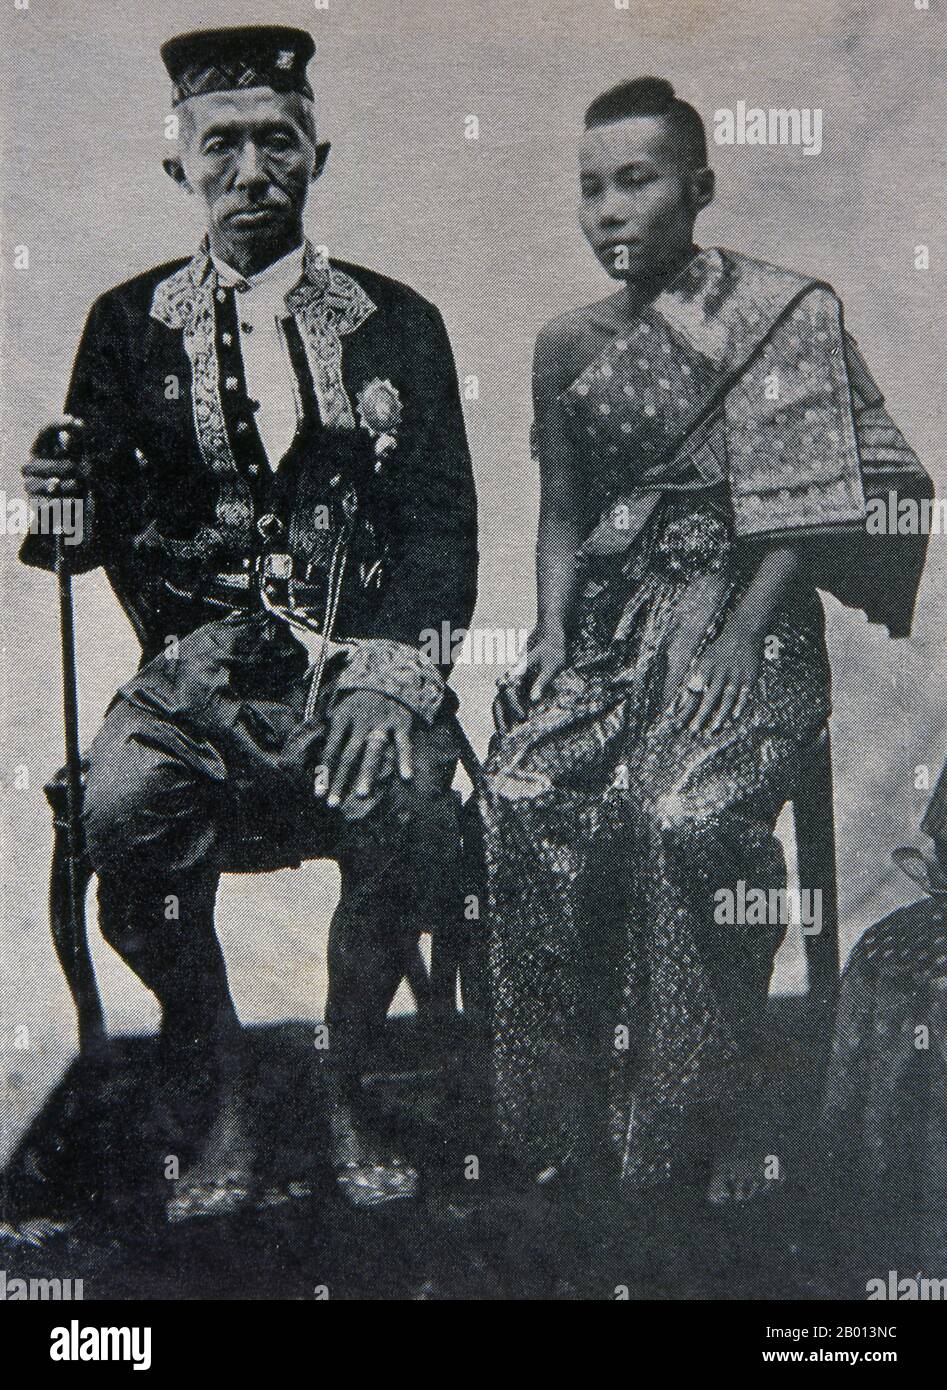 Thailandia: Re Rama IV, Mongkut (18 ottobre 1804 – 1 ottobre 1868), quarto monarca della dinastia Chakri con la sua moglie preferita, la regina Debsirindra (1834-1861), c.. 19 ° secolo. Phra Bat Somdet Phra Poramenthramaha Mongkut Phra Chom Klao Chao Yu Hua, o Rama IV, conosciuto in paesi stranieri come Re Mongkut, fu il quarto monarca del Siam (Thailandia) sotto la Casa di Chakri, al potere dal 1851 al 1868. Era uno dei monarchi più venerati del paese. Al di fuori della Thailandia, è meglio conosciuto come il Re nella commedia del 1951 e nel film del 1956 "il Re e i". Foto Stock